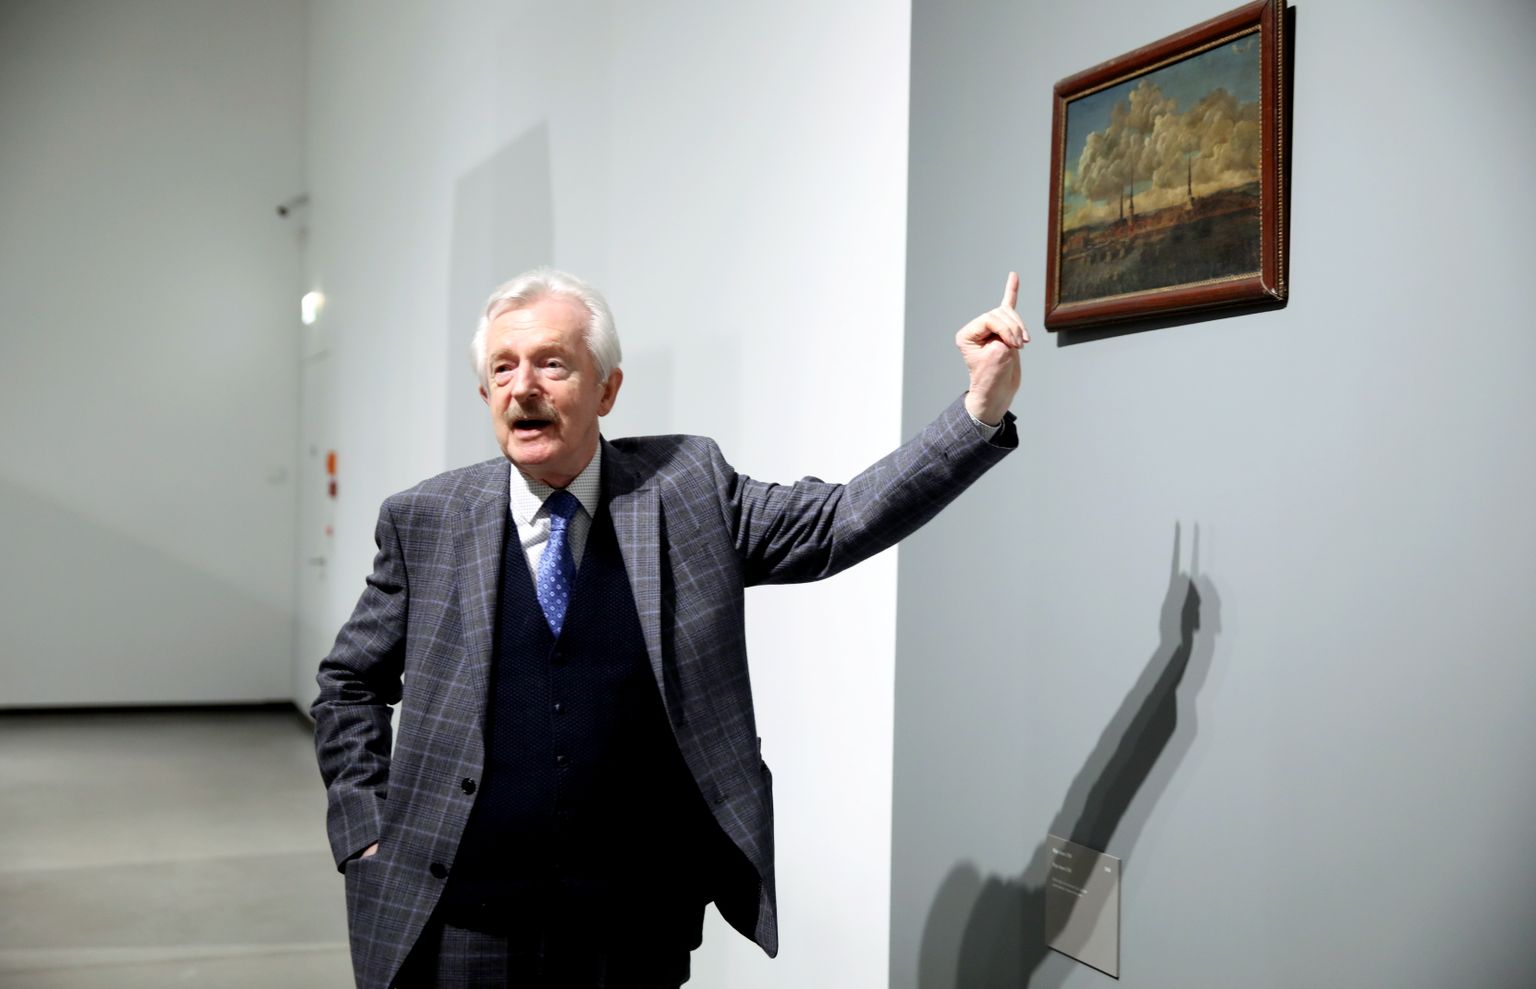 Mākslinieks, mākslas vēsturnieks Imants Lancmanis piedalās izstādes "Imanta Lancmaņa māksla" atklāšanas pasākumā Latvijas Nacionālajā mākslas muzejā.